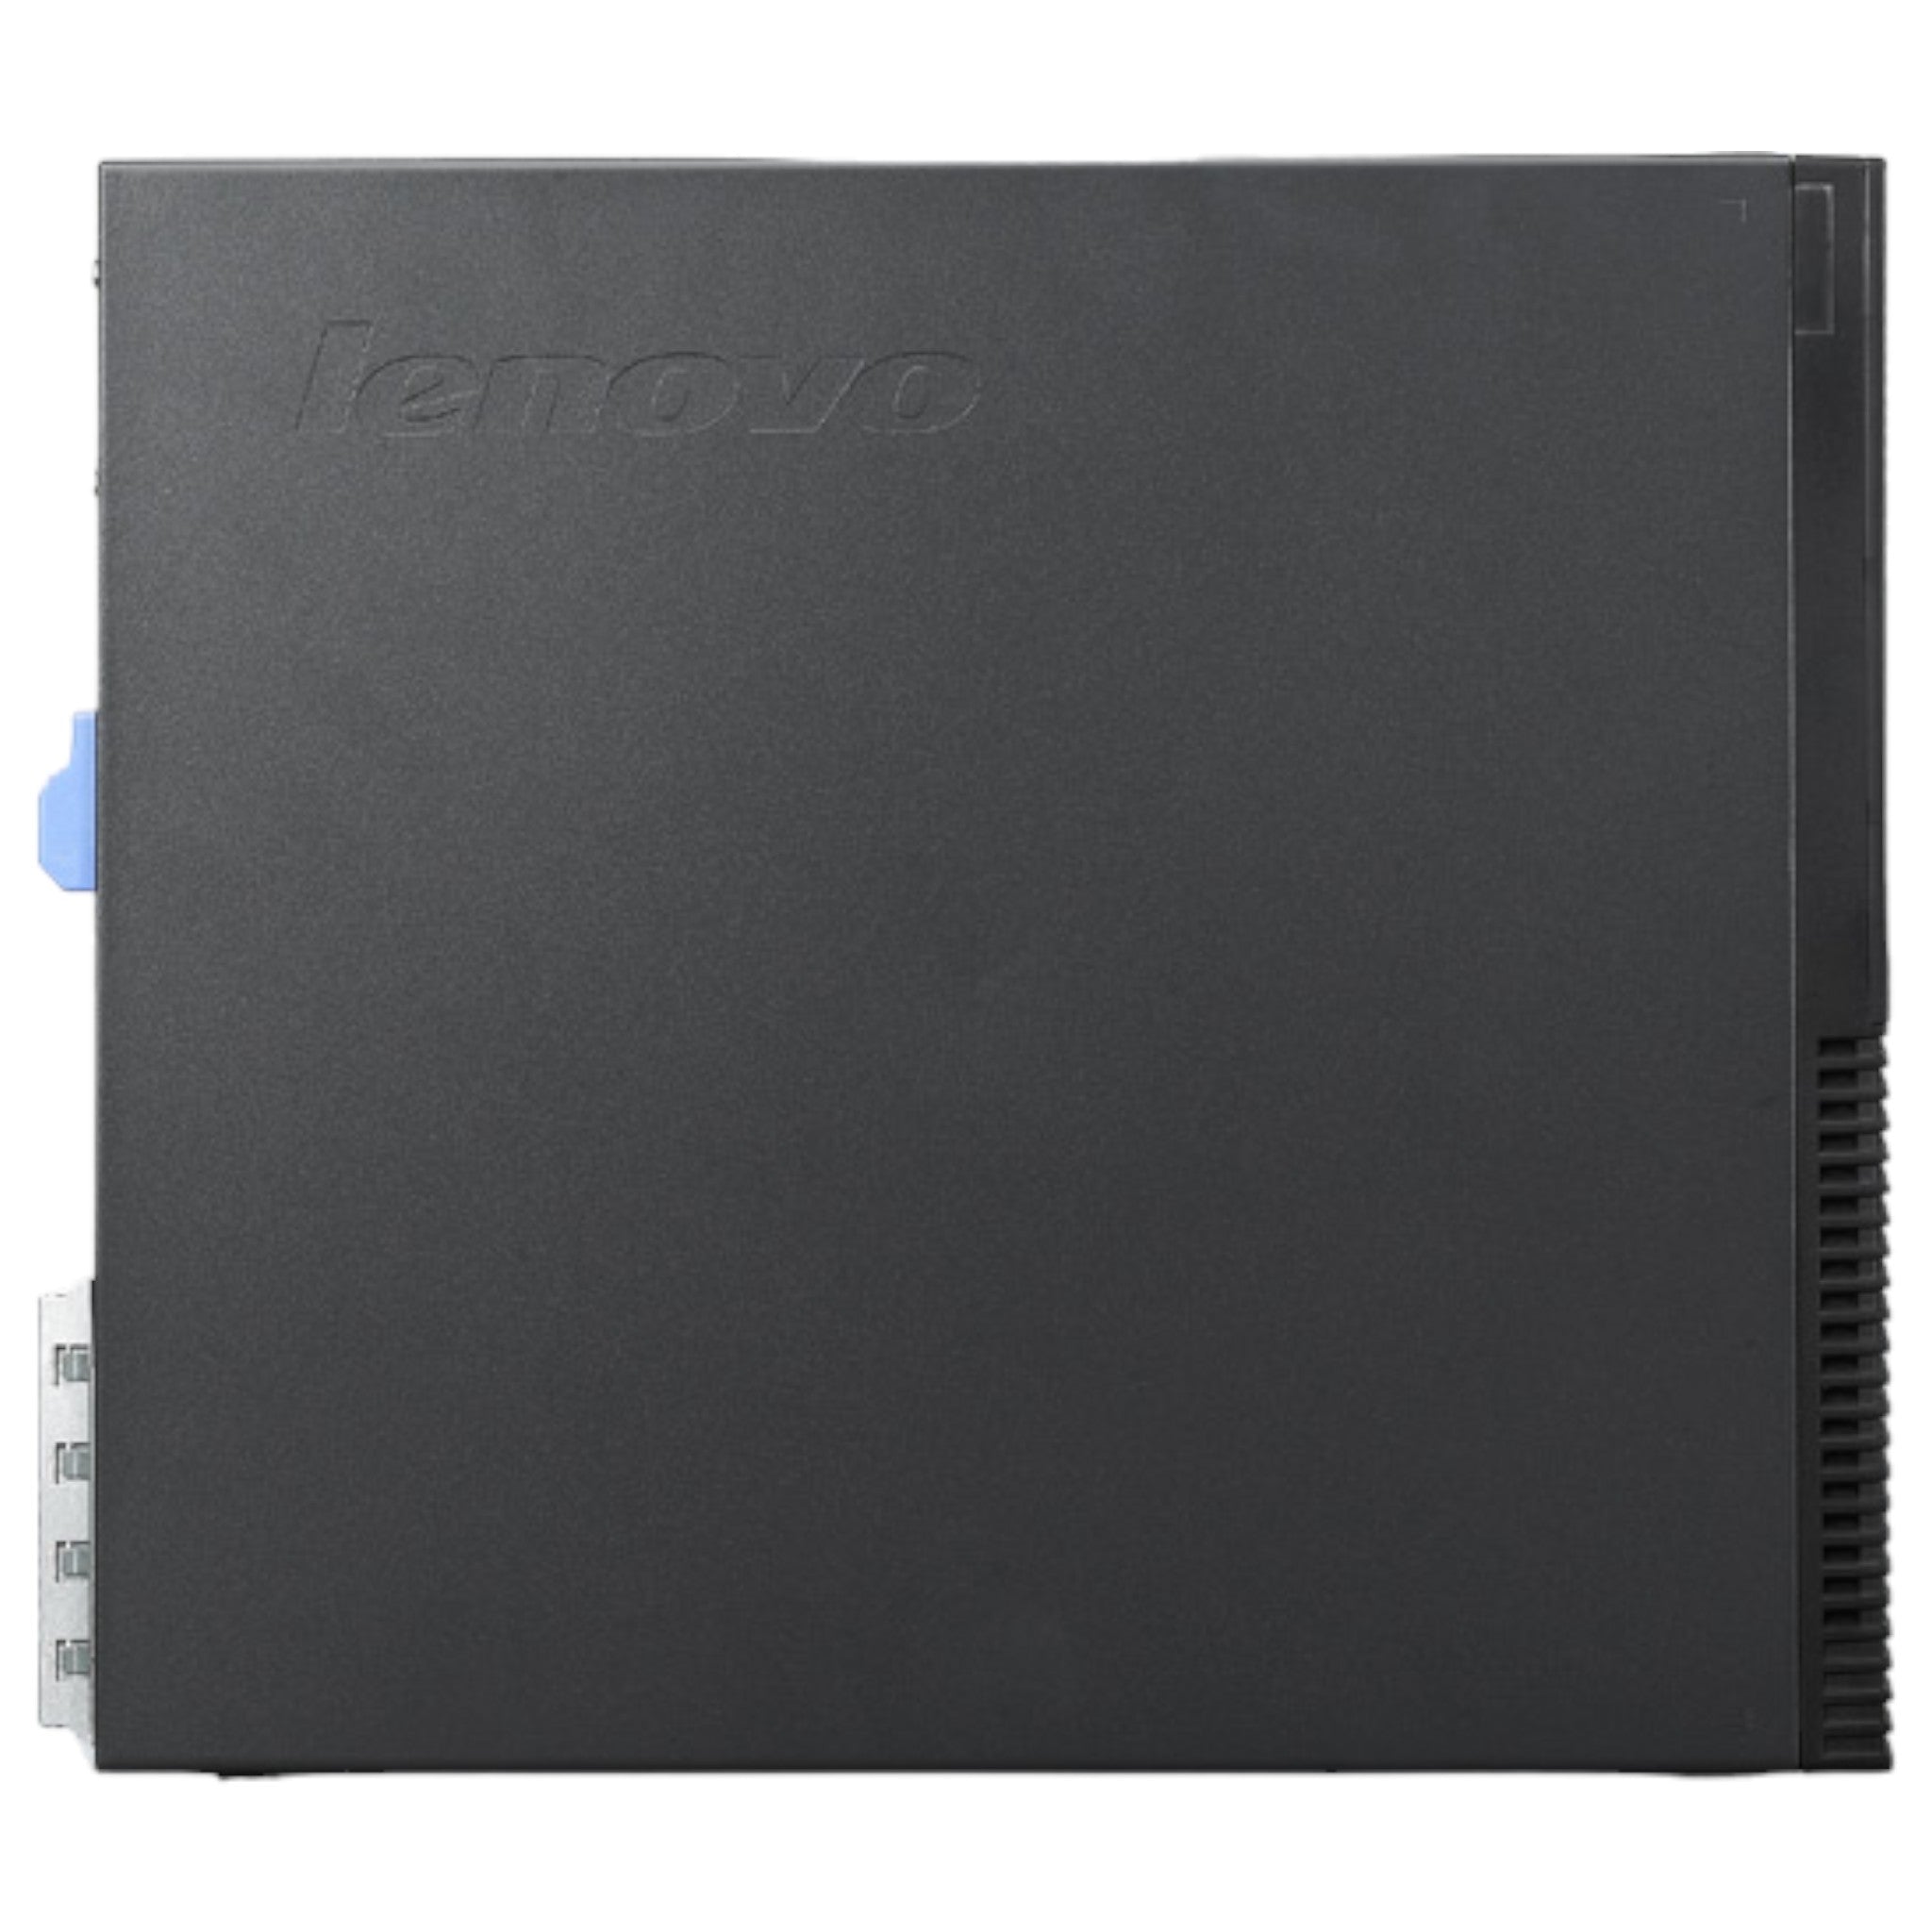 Lenovo ThinkCentre M82 SFF | G2020 | 4 GB | 500 GB HDD | DVD/RW - computify